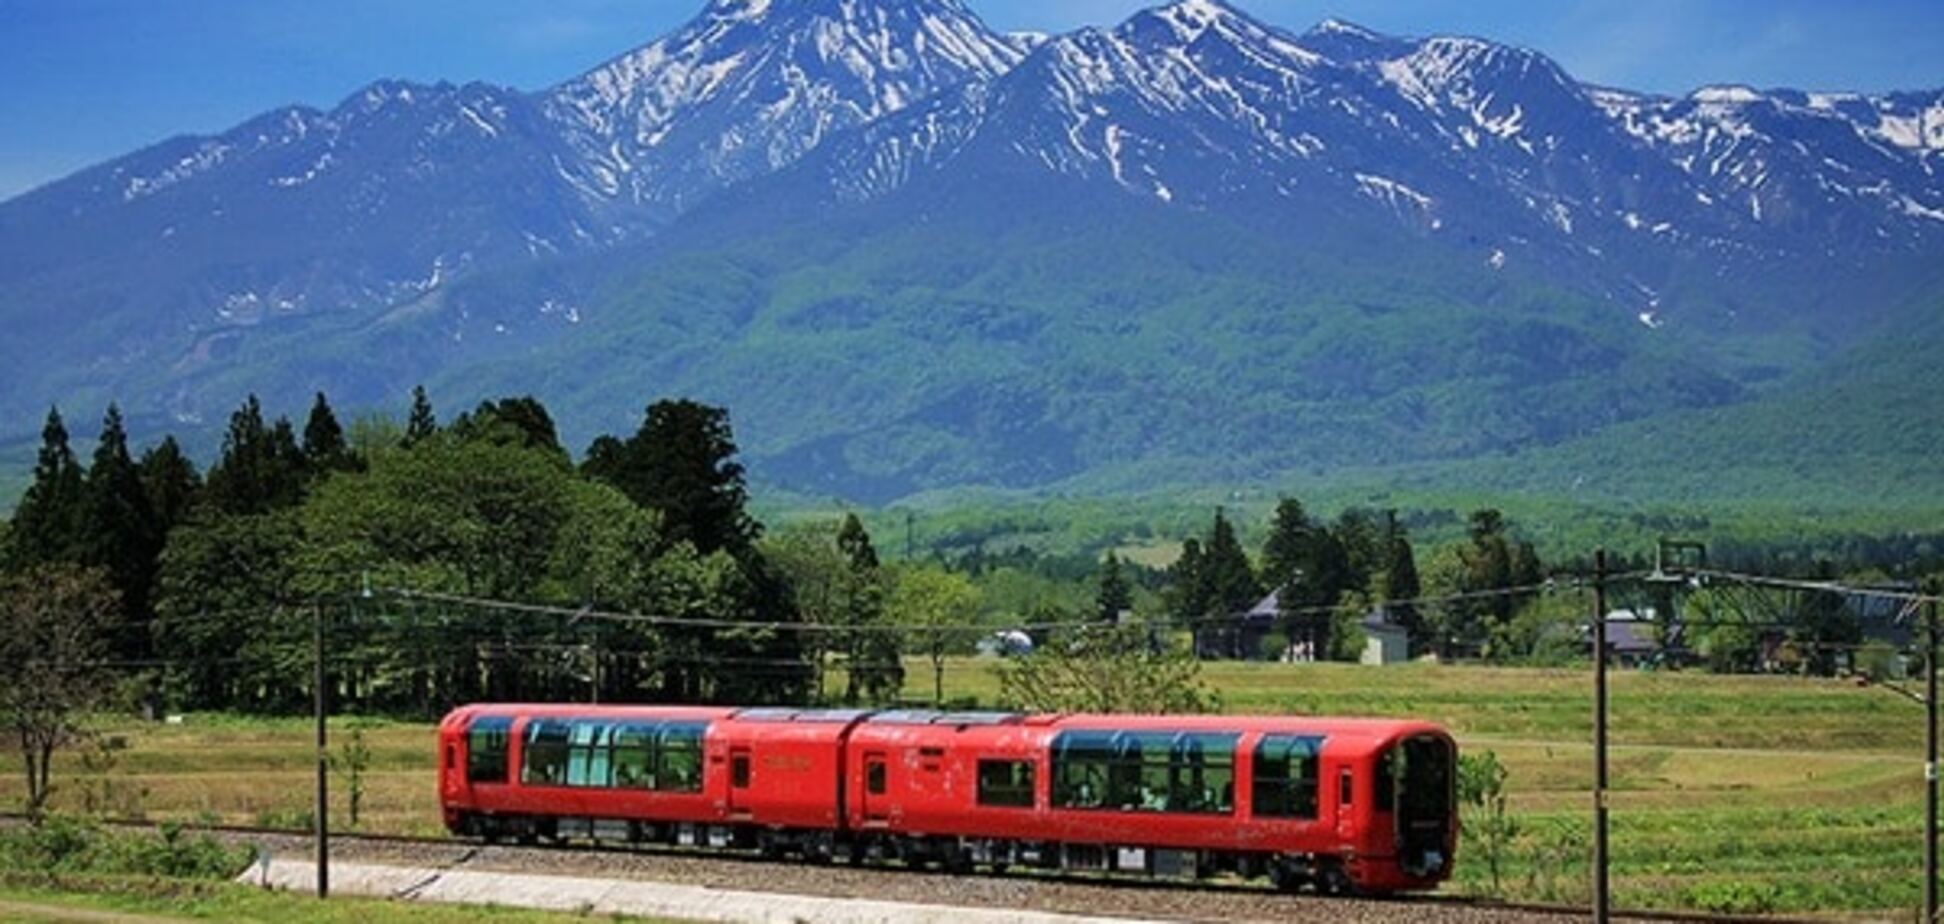 Катайся и наслаждайся: в Японии появился 'стеклянный' поезд для туристов. Опубликованы фото